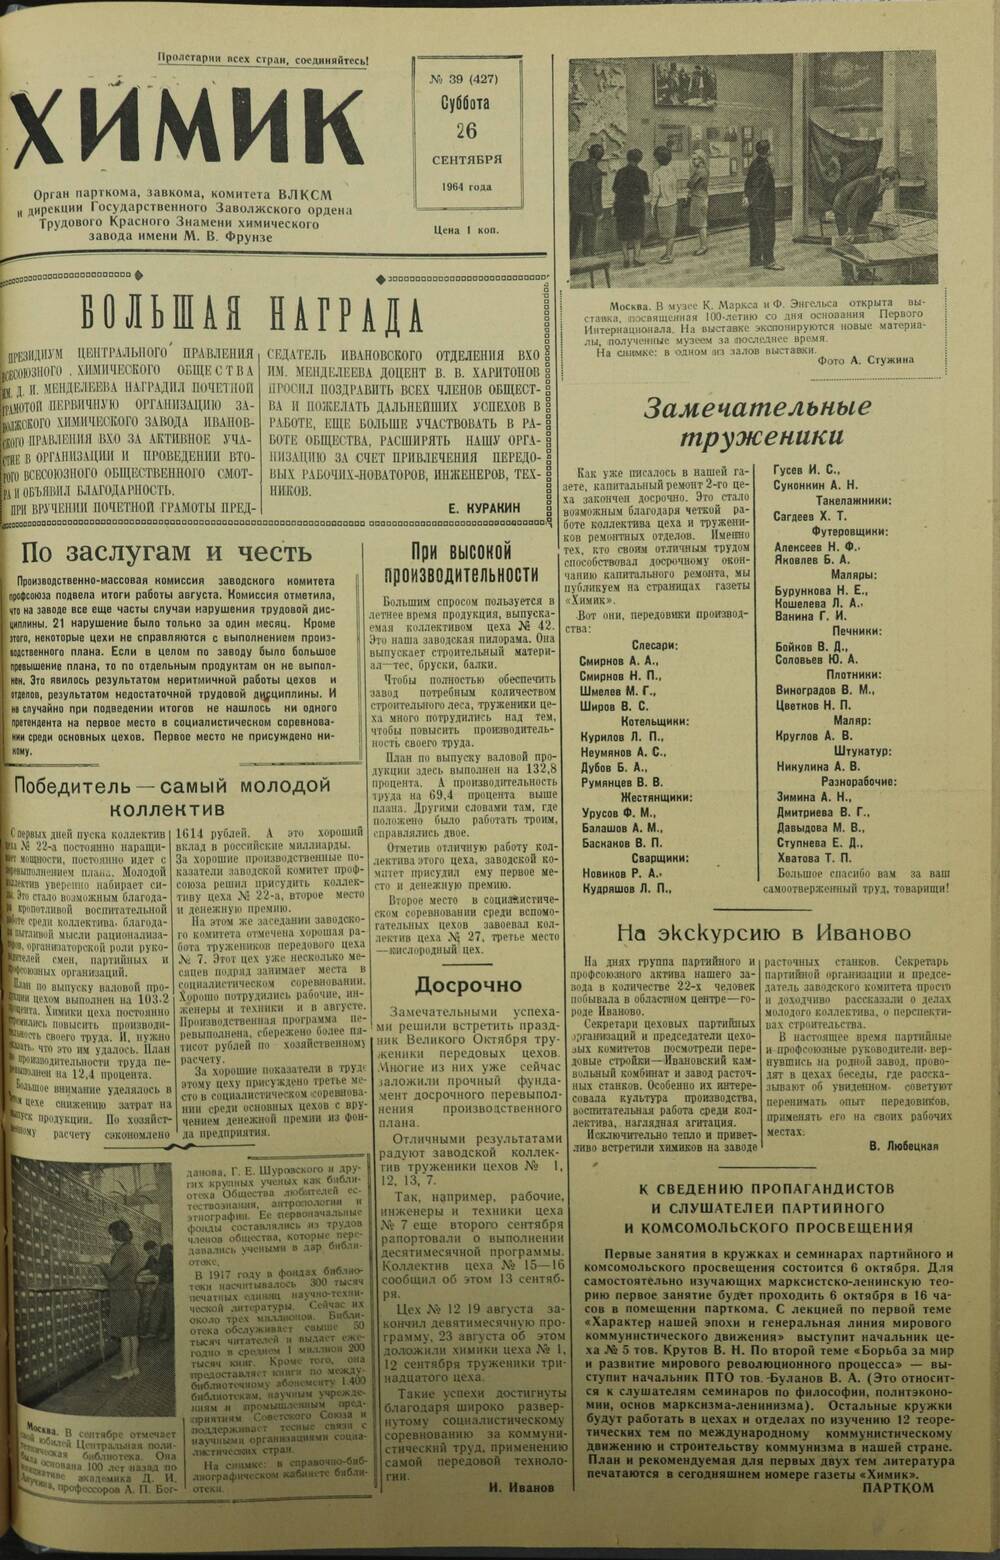 Газета «Химик» № 39 от 26 сентября 1964 года.